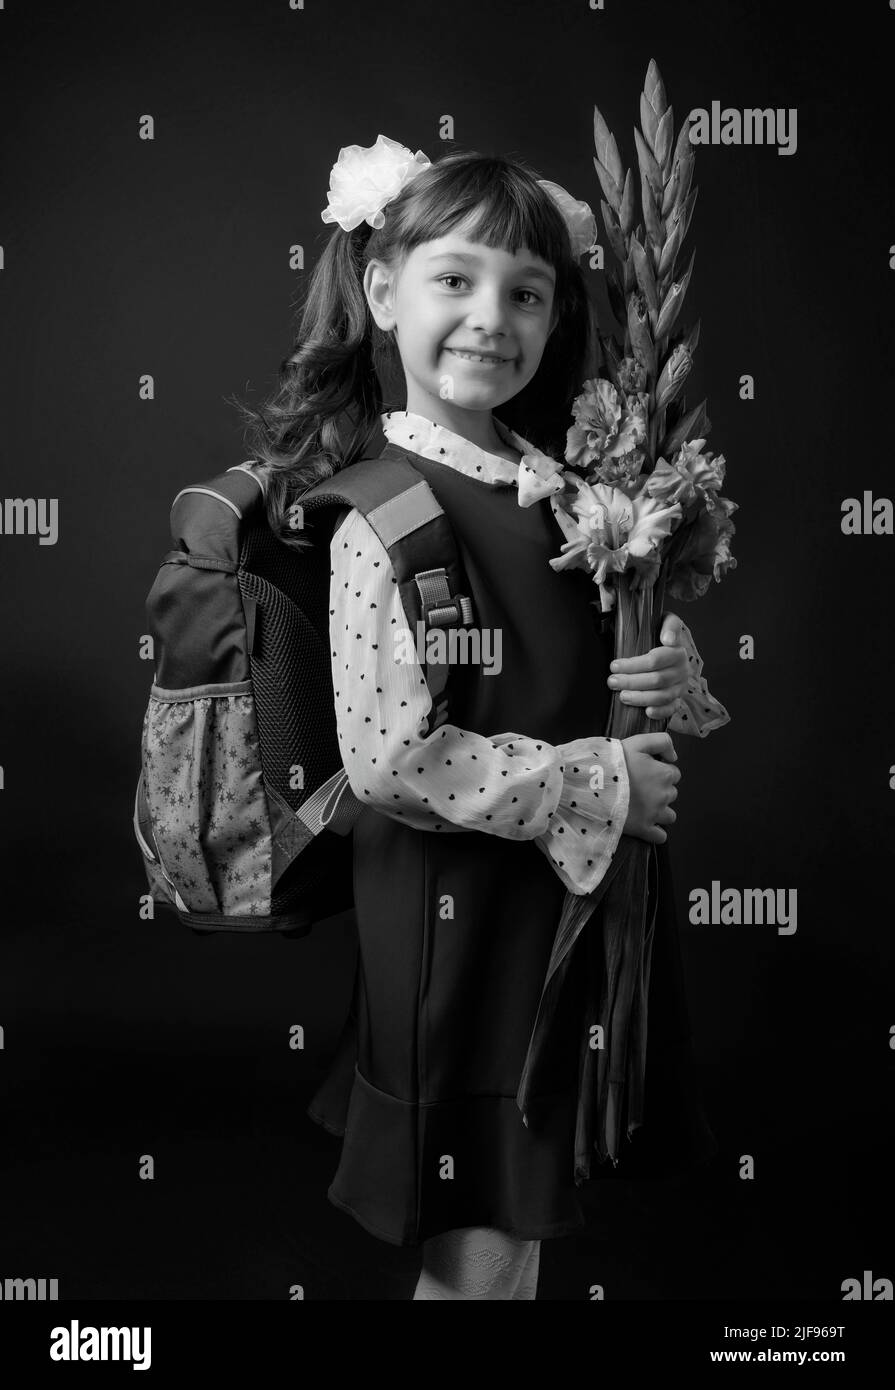 Portrait d'une fille dans un uniforme d'école primaire. Un haut-grader avec un sac à dos et des fleurs. Noir et blanc. Banque D'Images